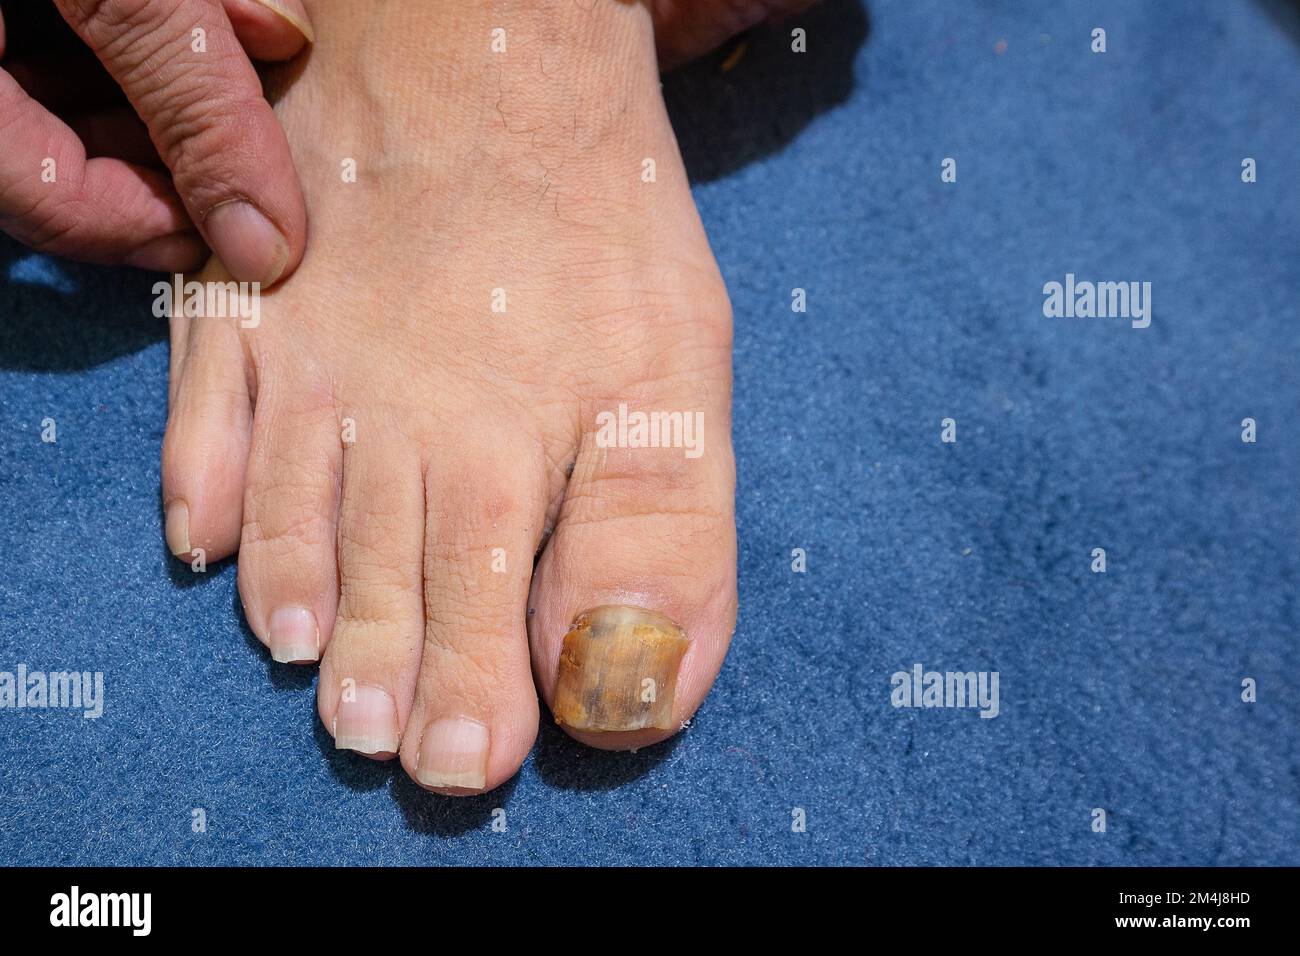 Ingrowing toe nails info